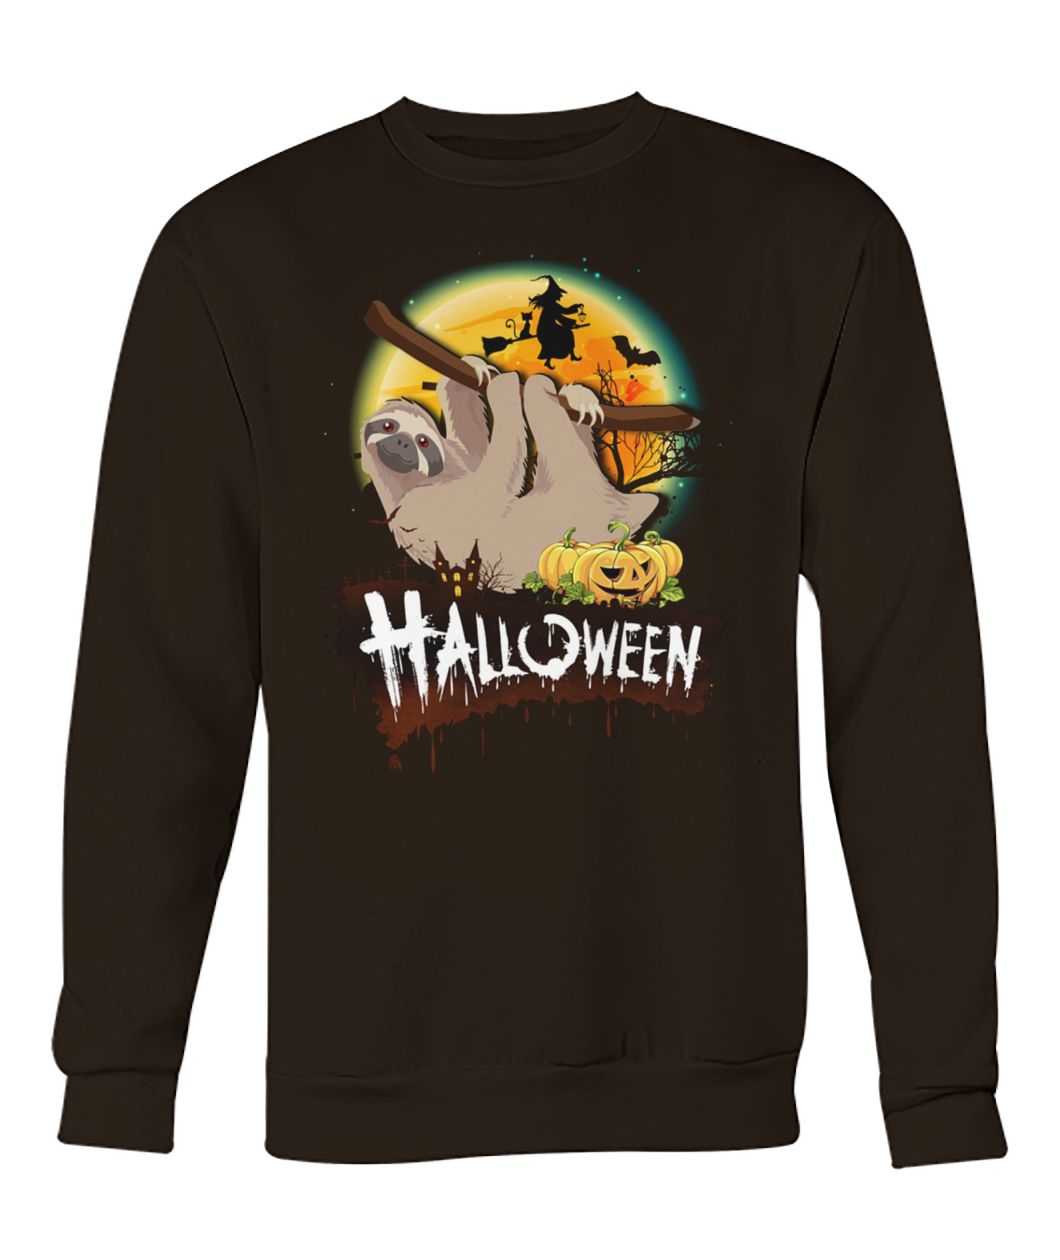 Sloth halloween crew neck sweatshirt